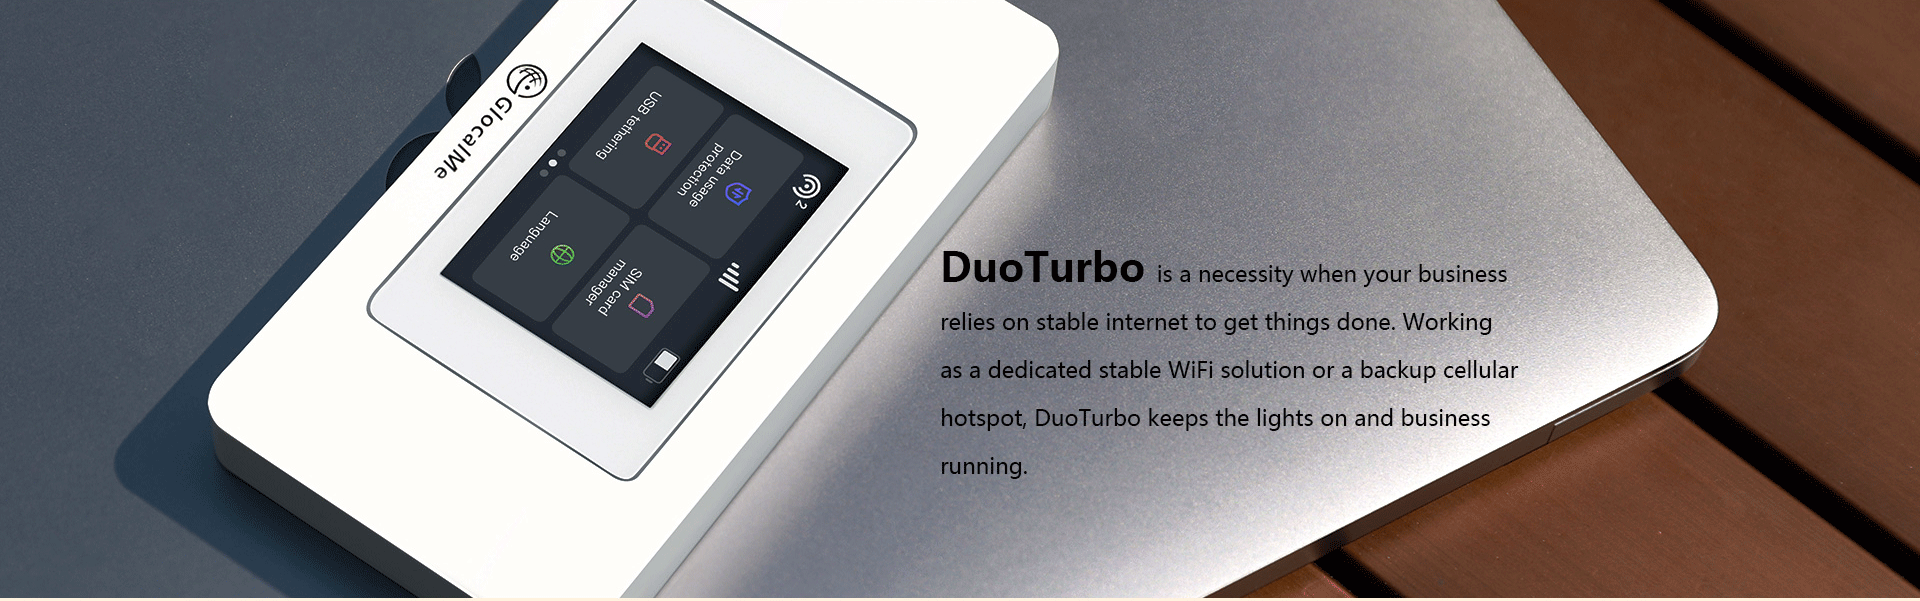 2021 1 27 DuoTurbo 官网PC端（美国站） 05